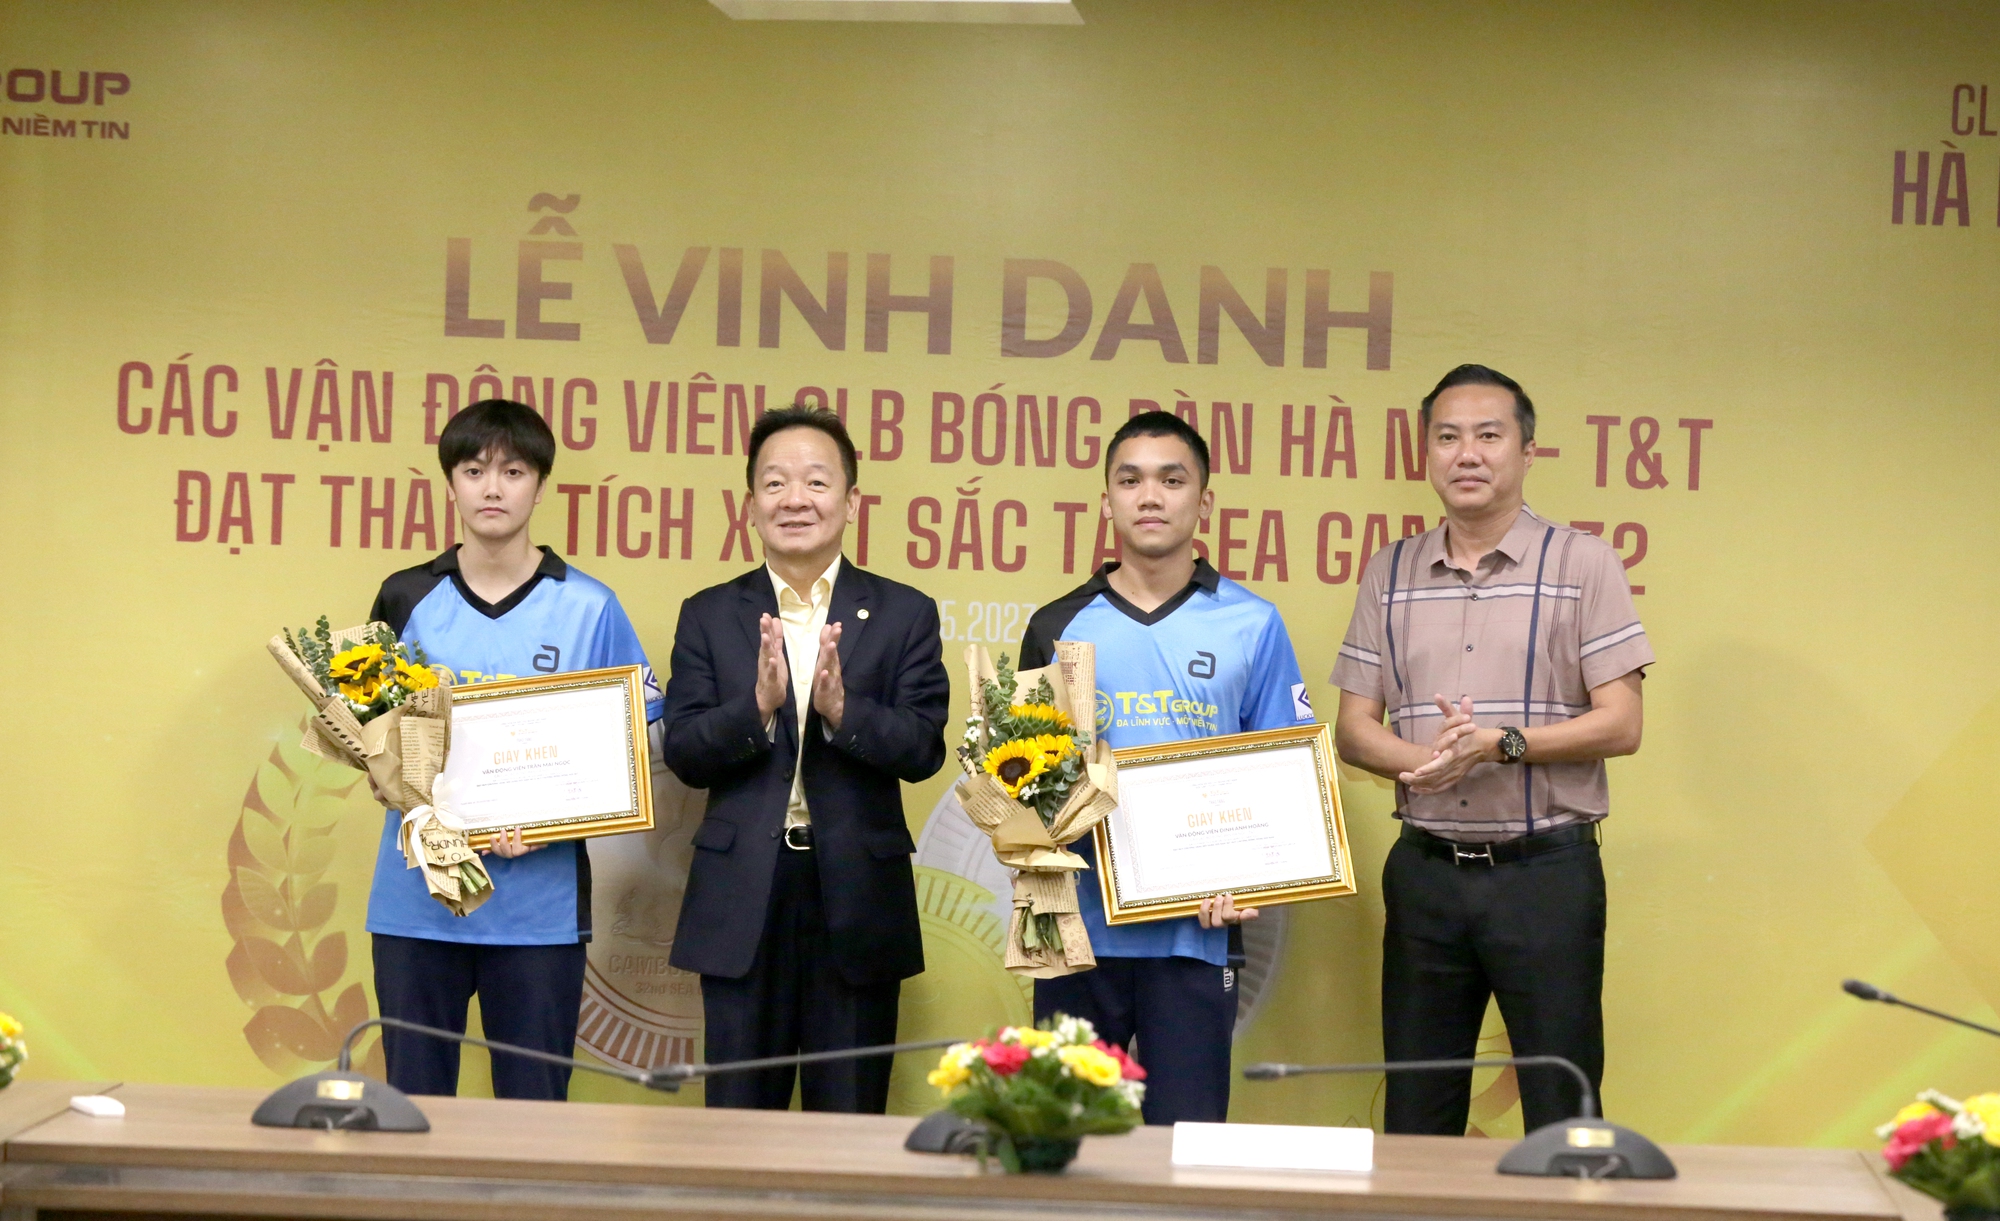 Giải Bóng bàn các đội mạnh quốc gia 2023: Hà Nội T&T tạo ấn tượng mạnh mẽ - Ảnh 2.